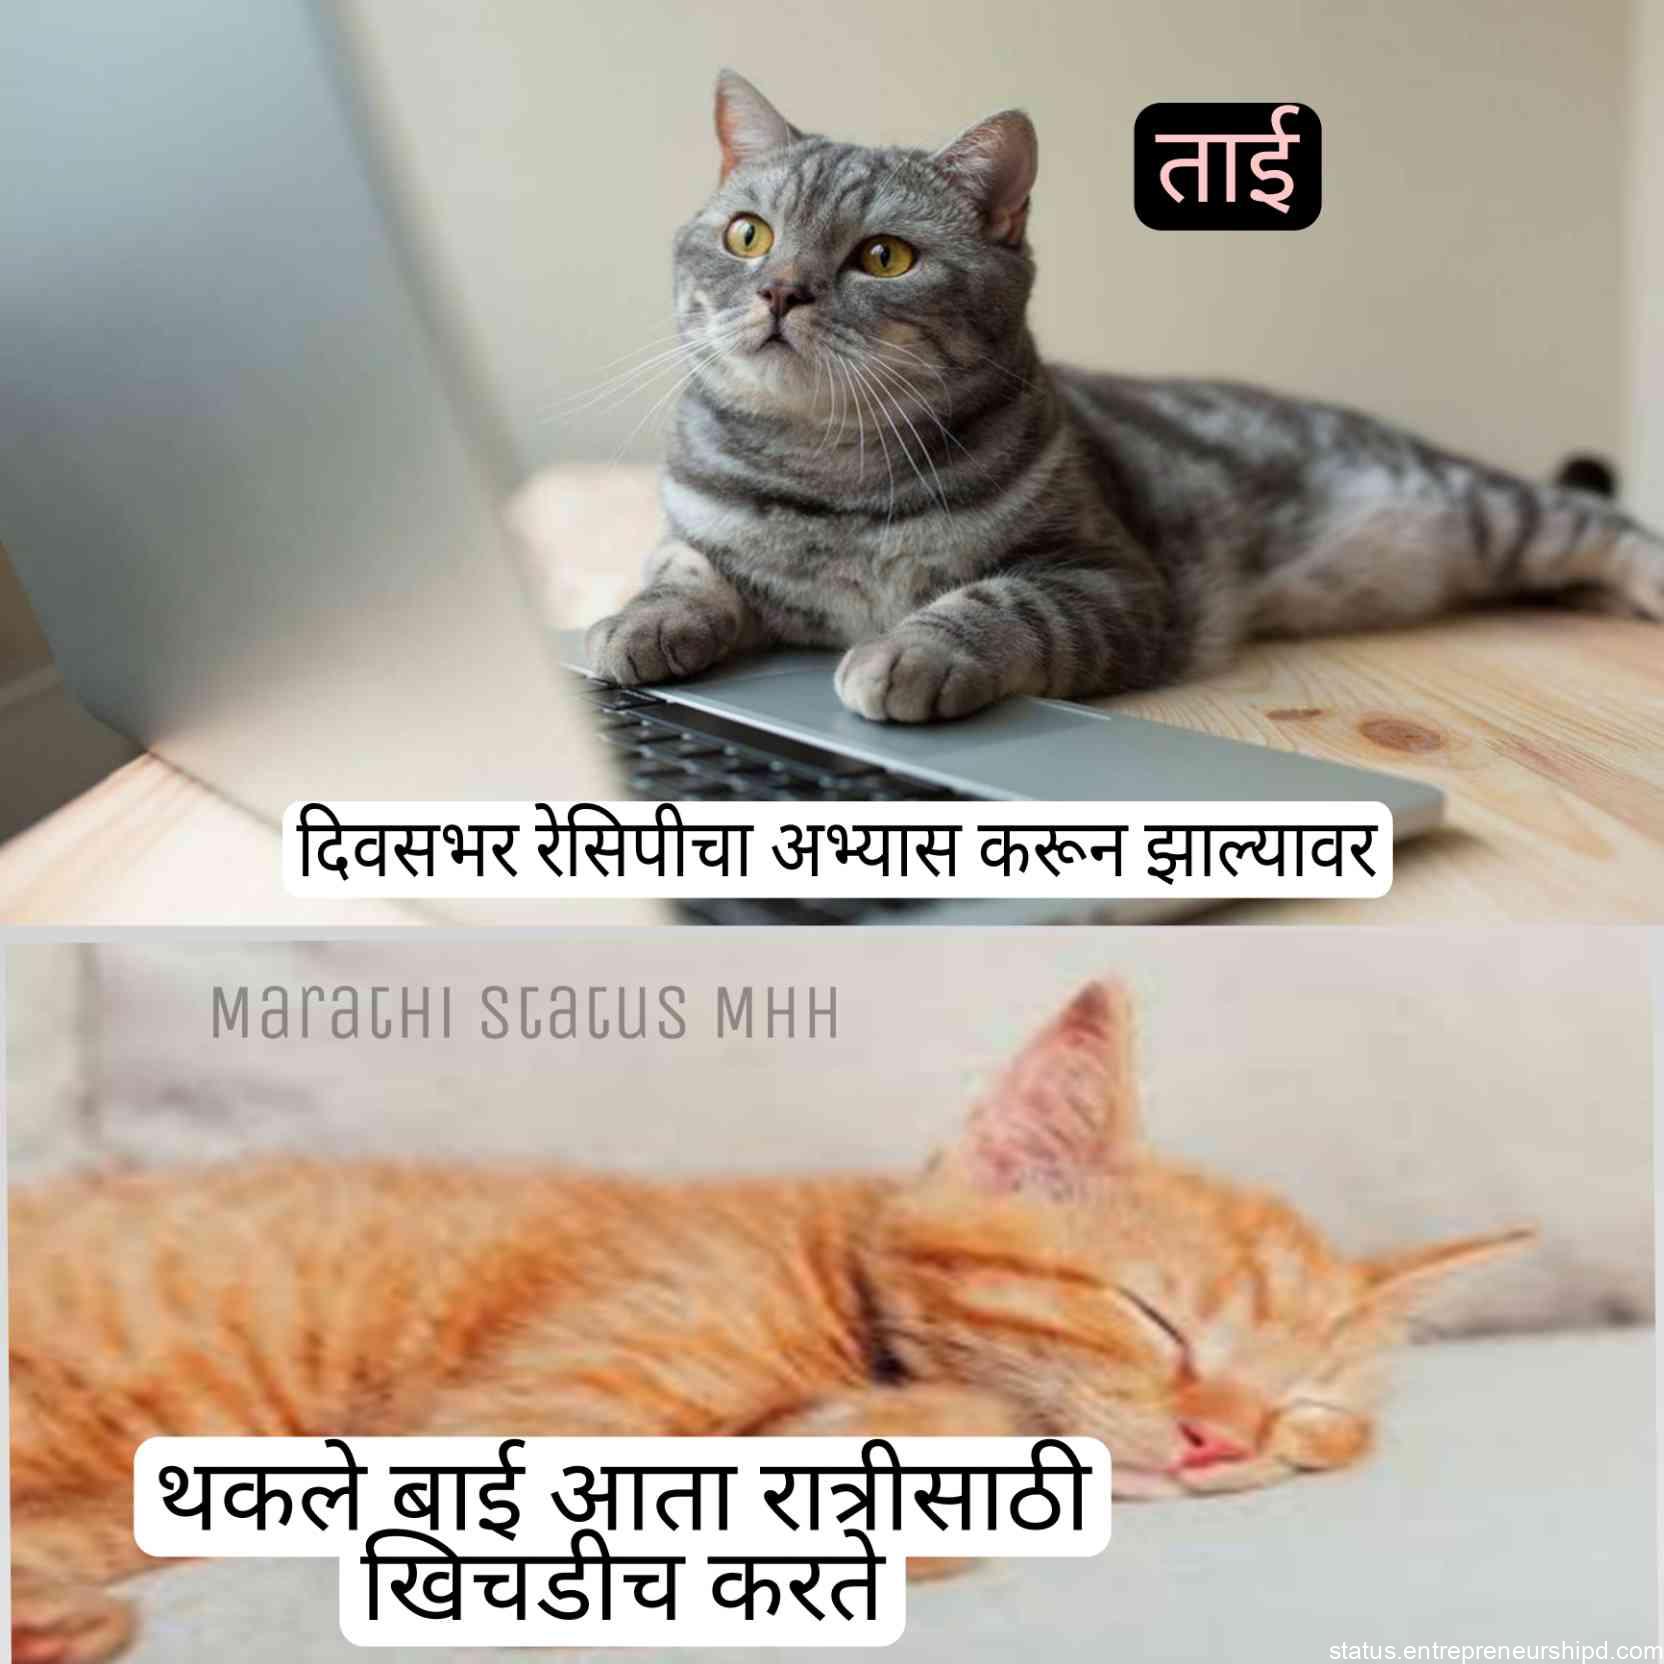 Marathi memes two cat